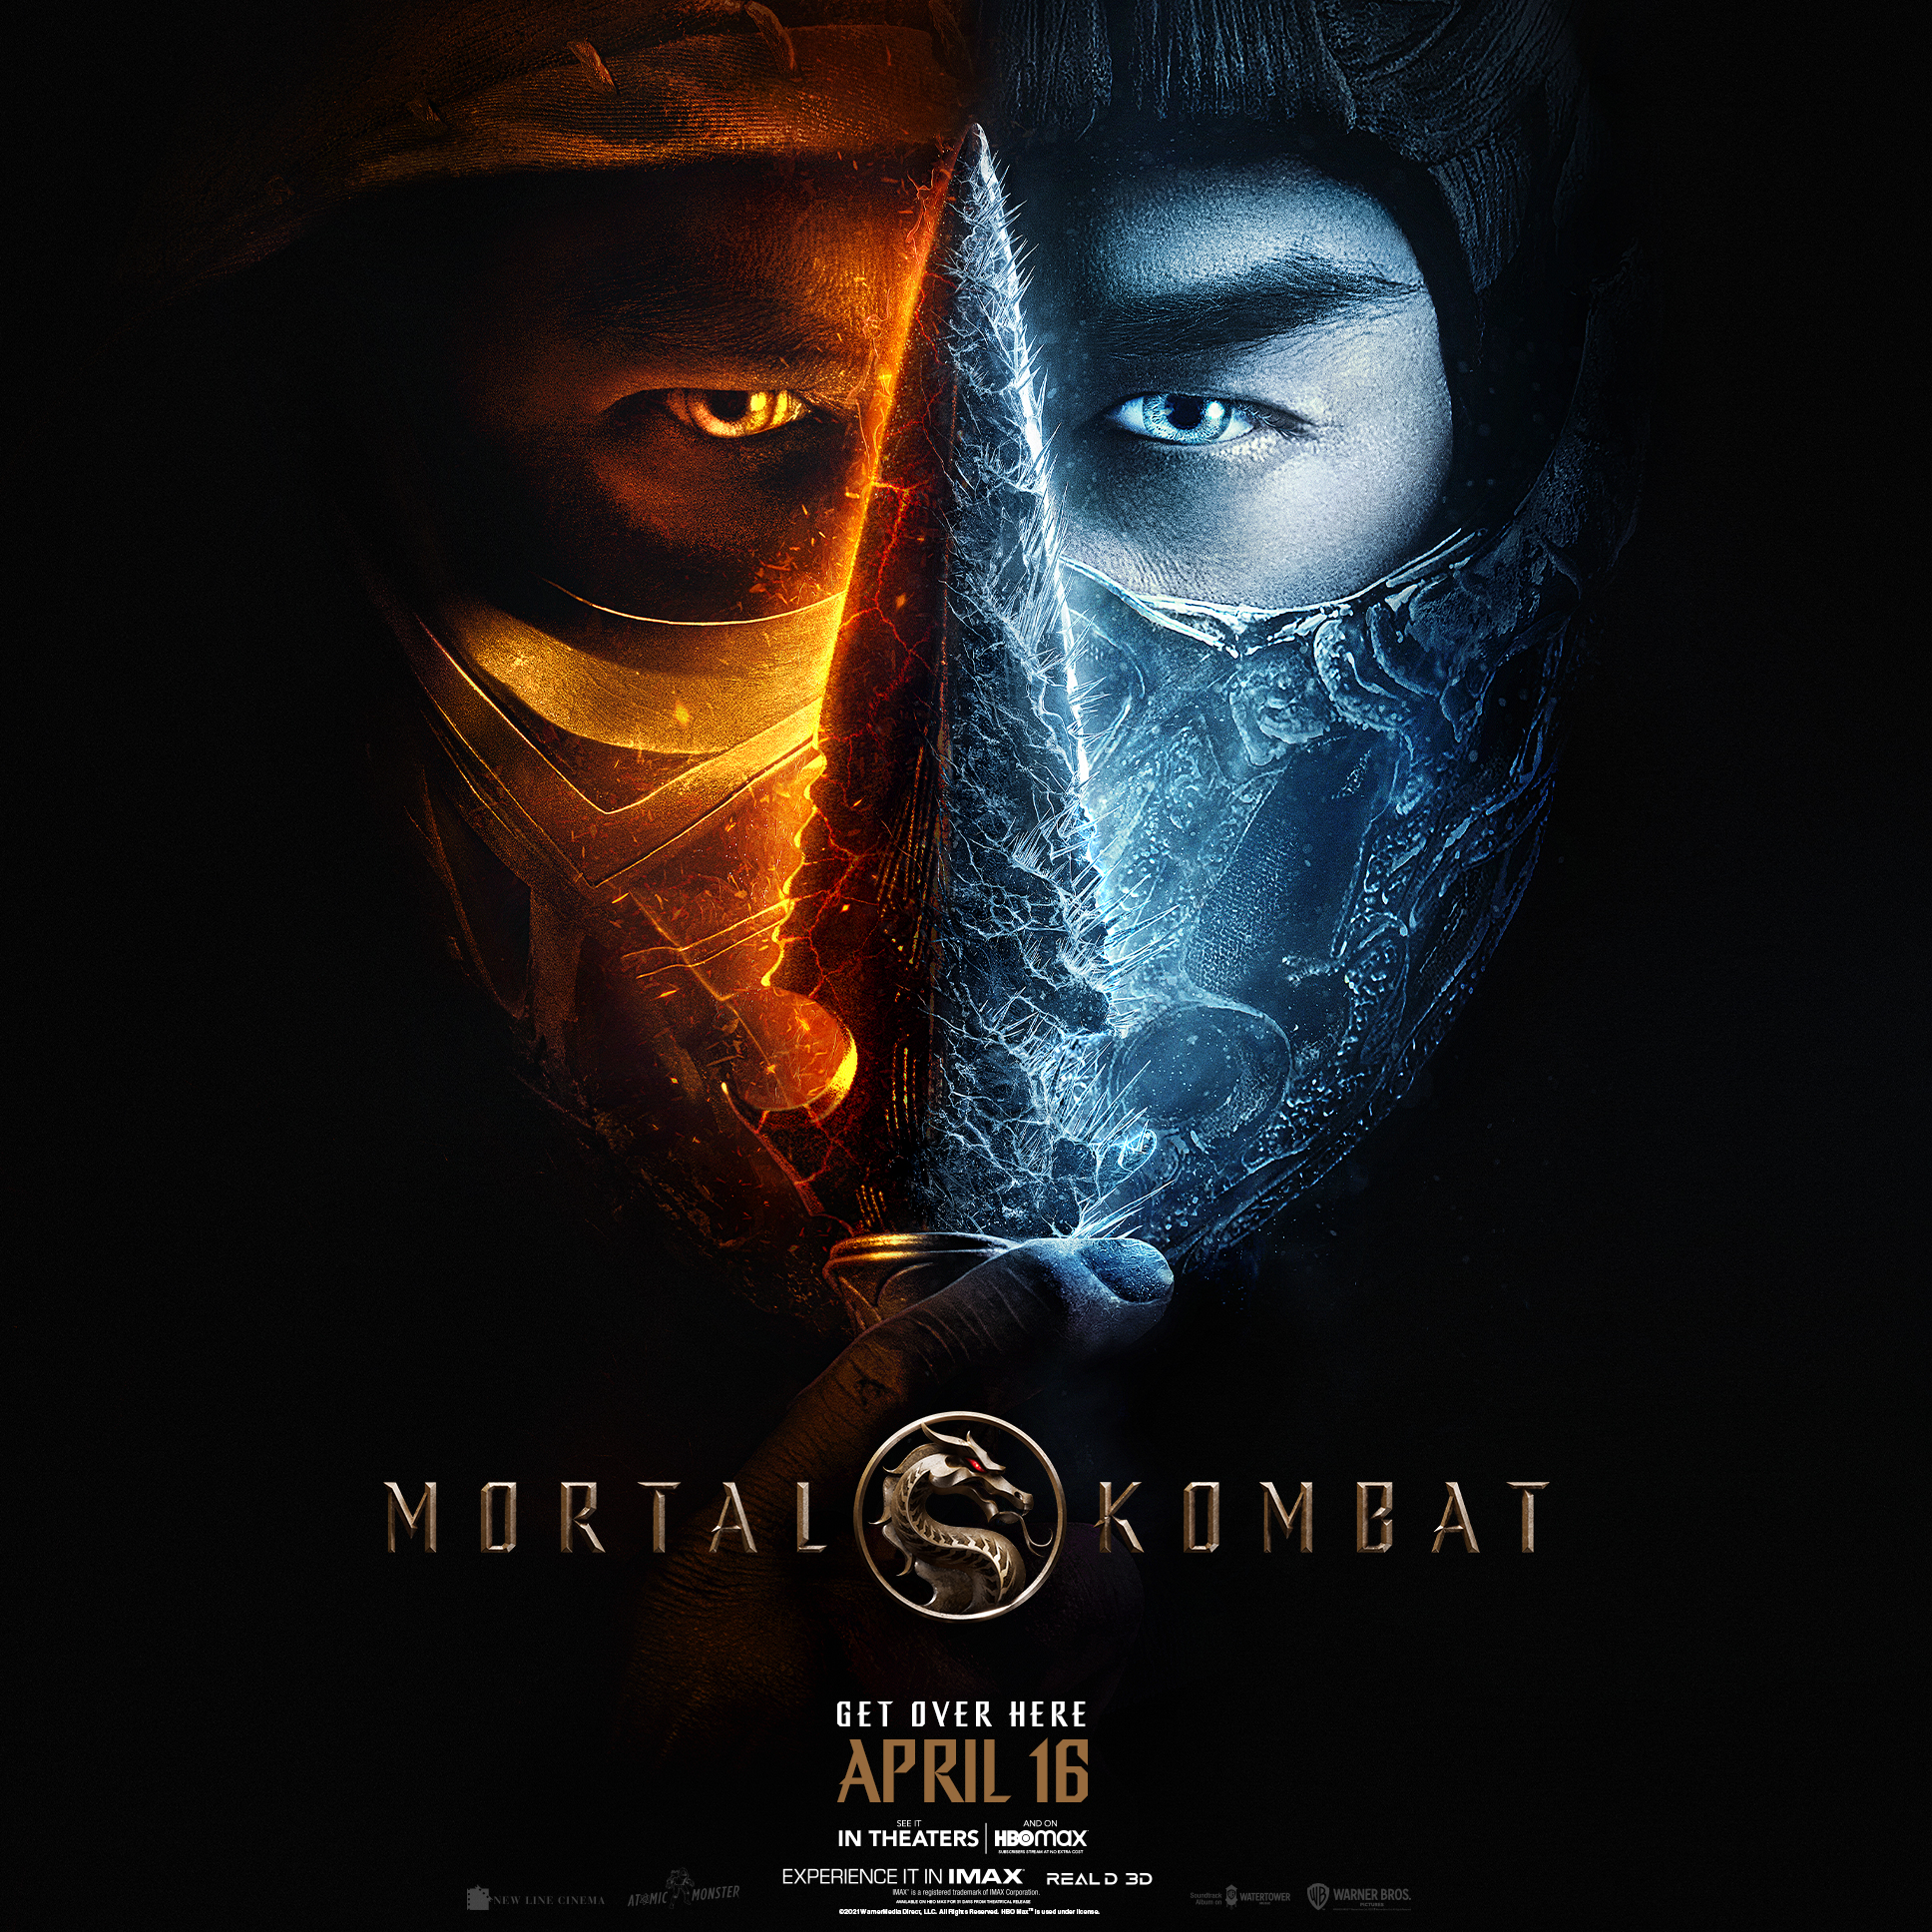 Mortal Kombat Trailer Brings The Gore And Fatalities!